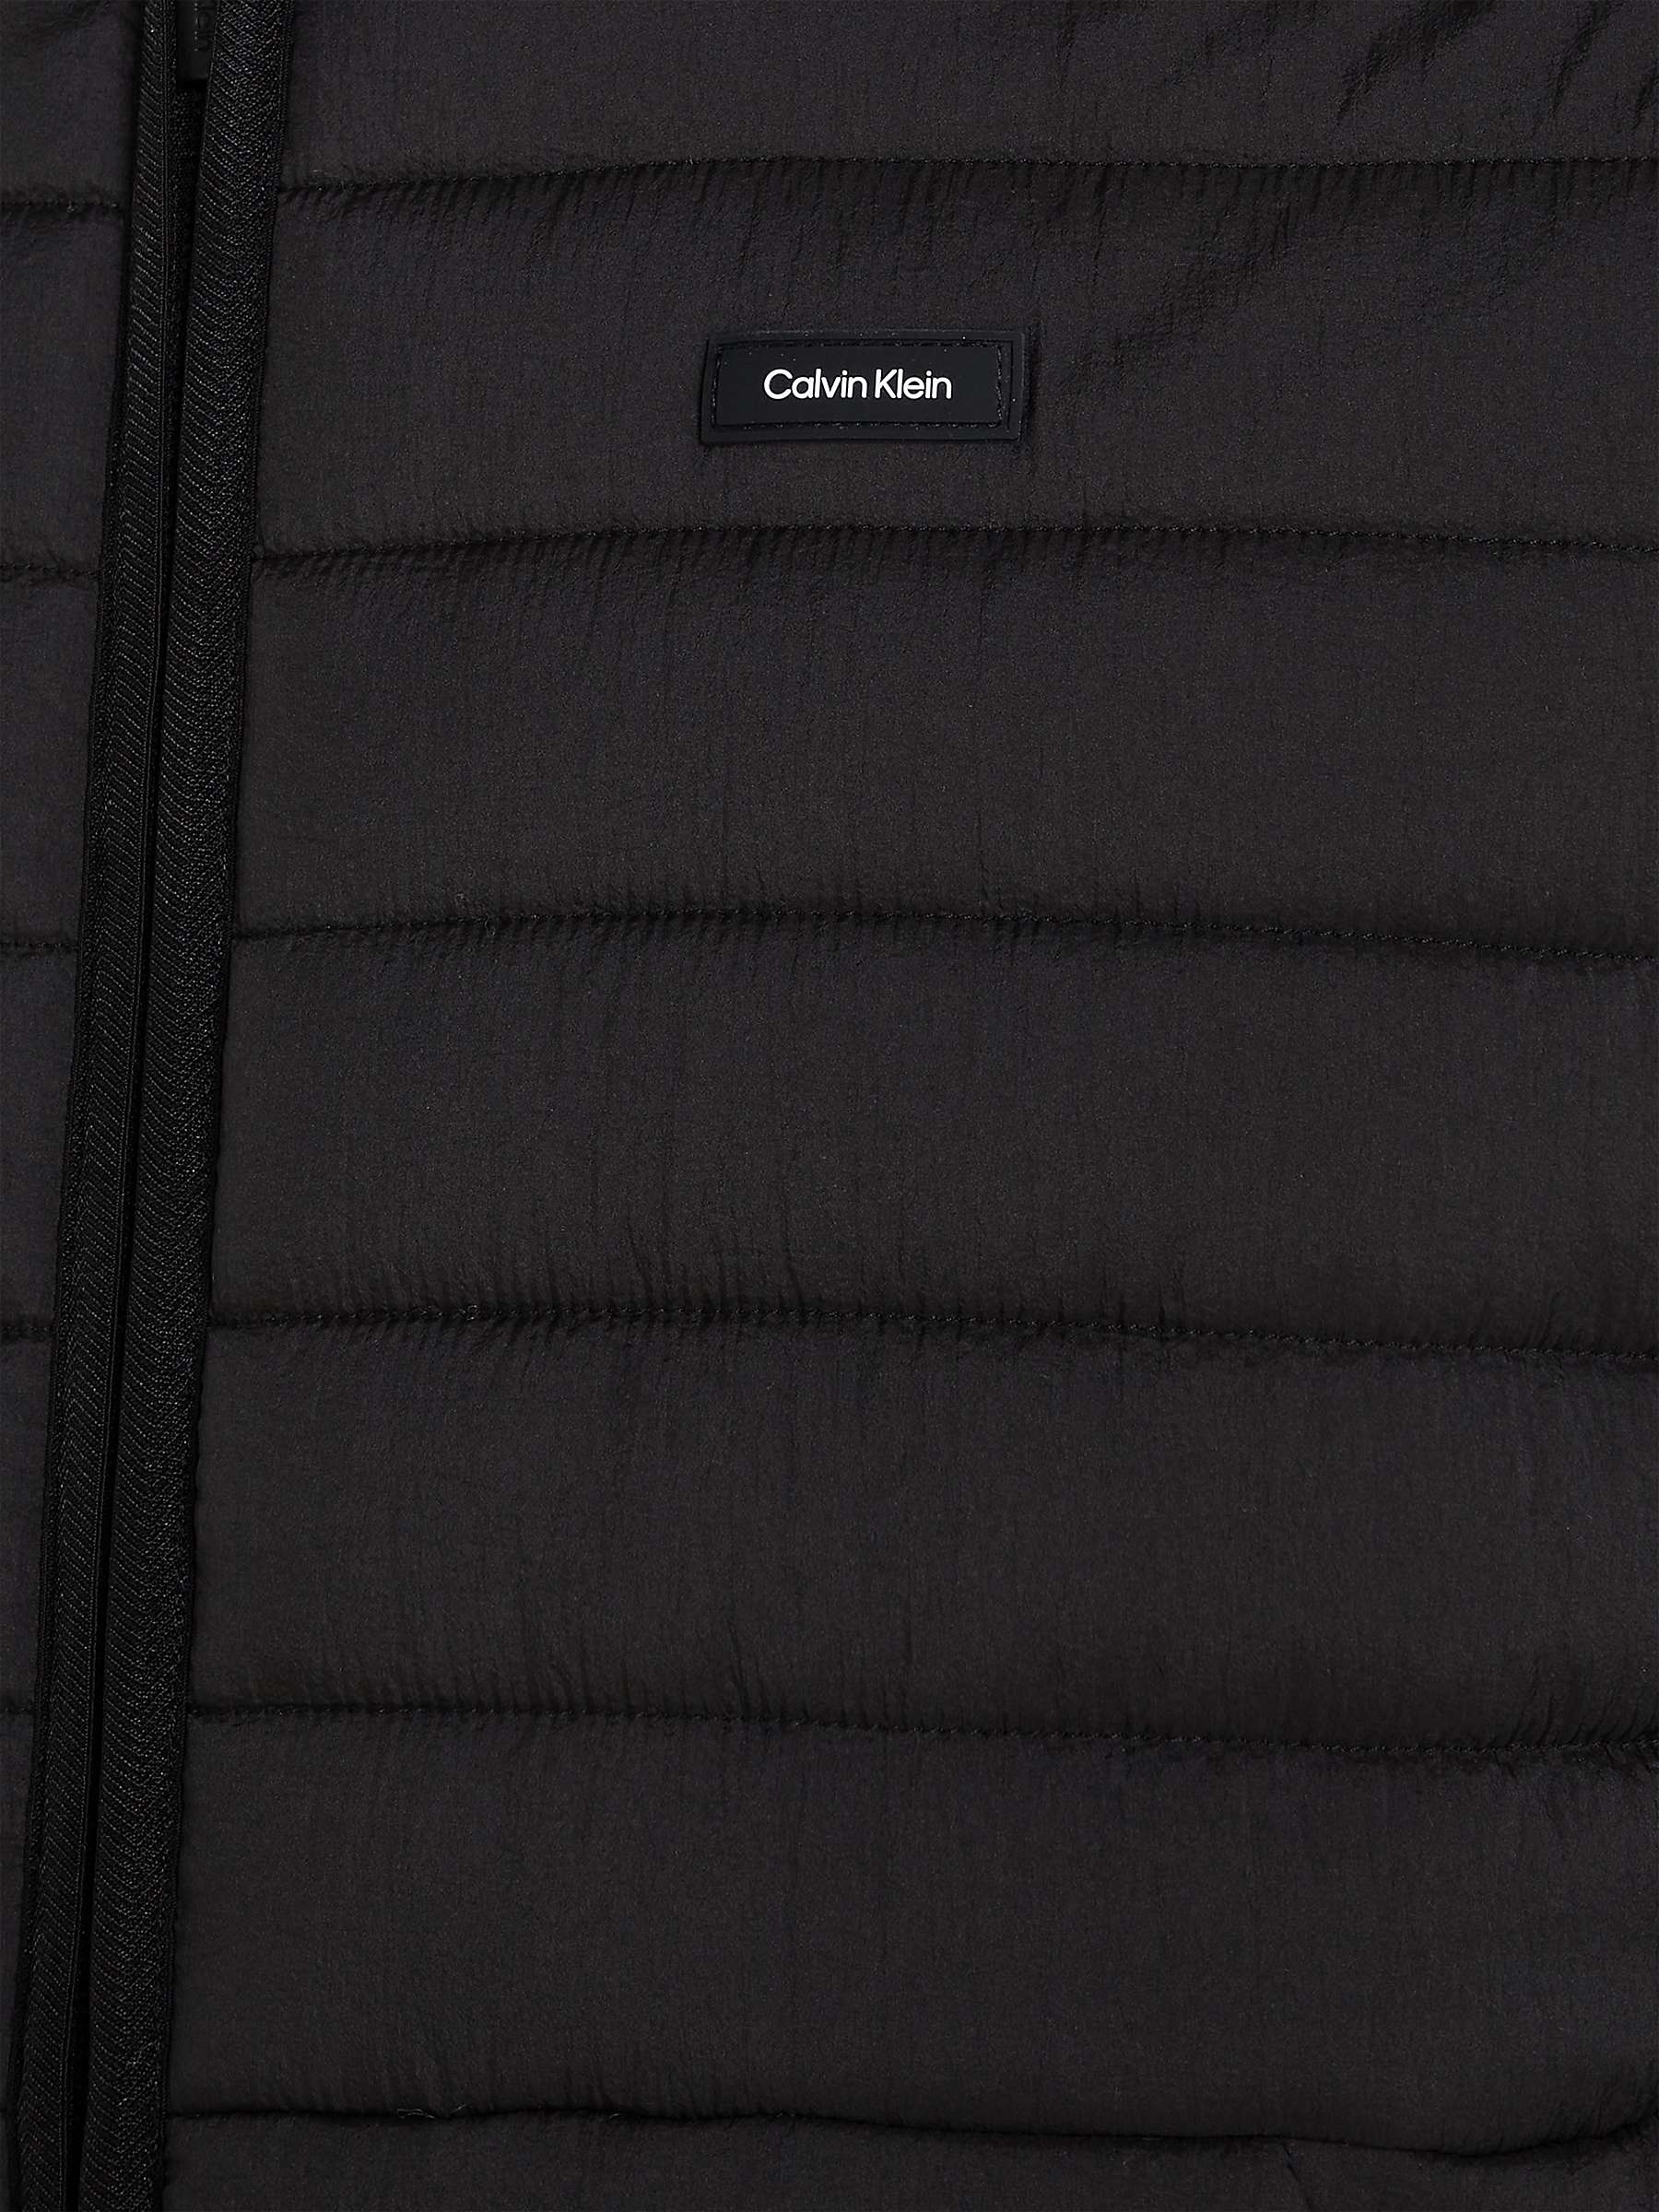 Buy Calvin Klein Crinkle Quilt Jacket, Black Online at johnlewis.com